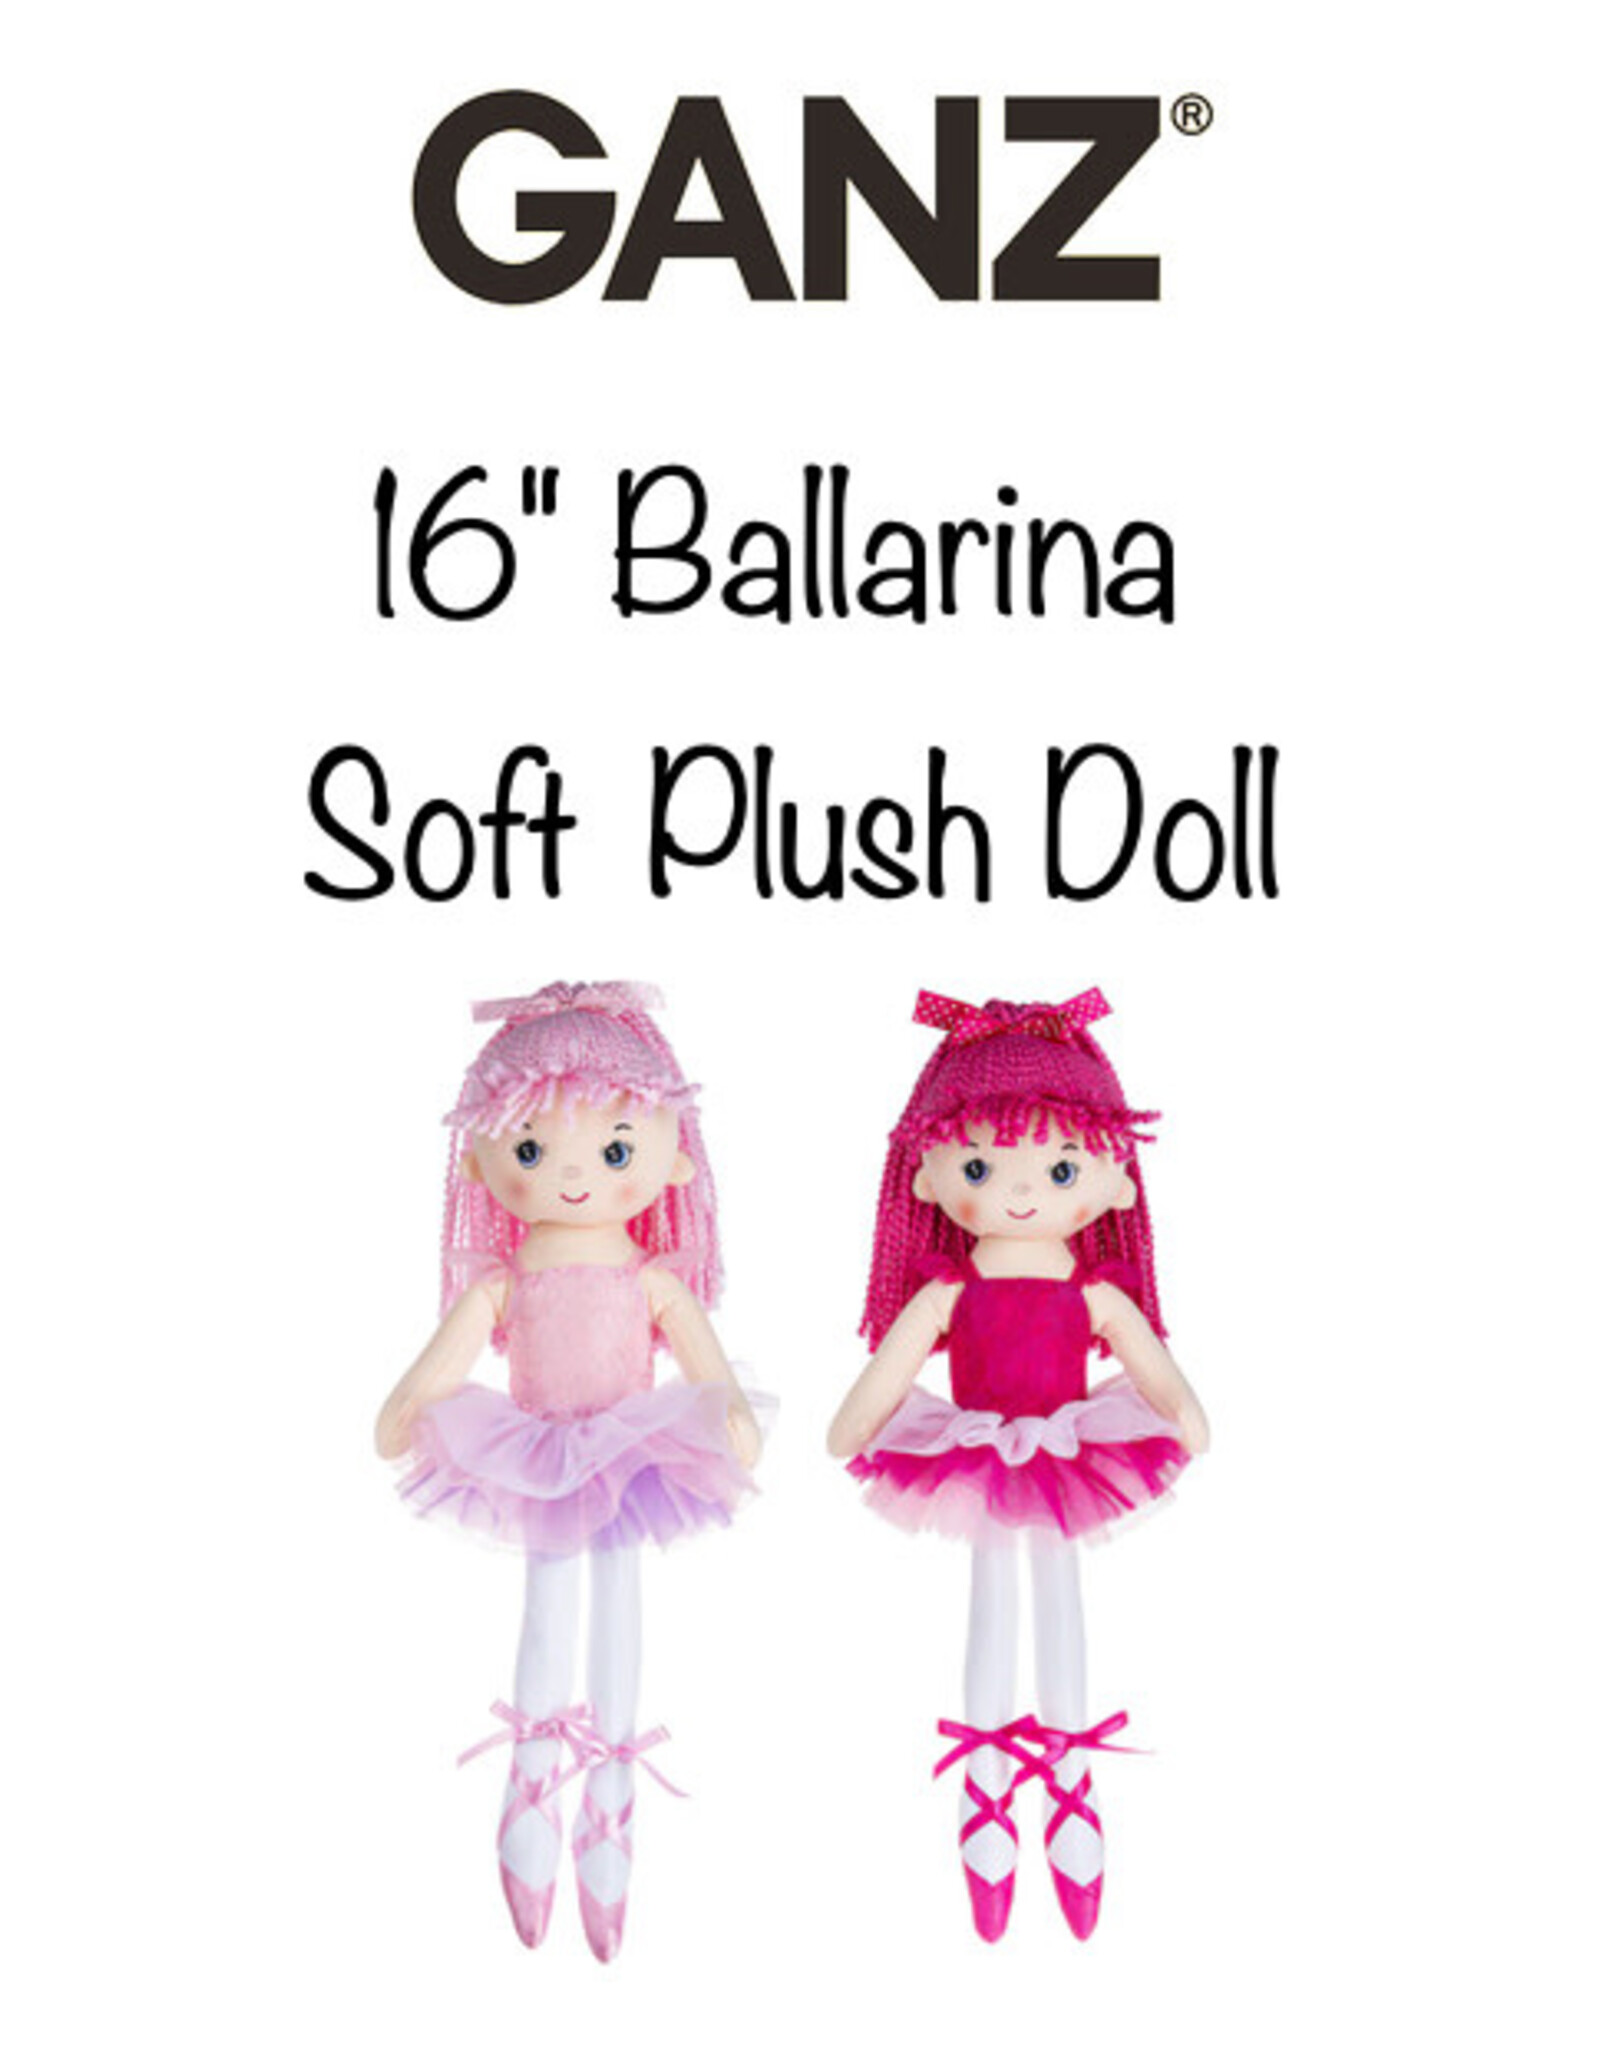 Ganz 16 inch Ballerina Dolls